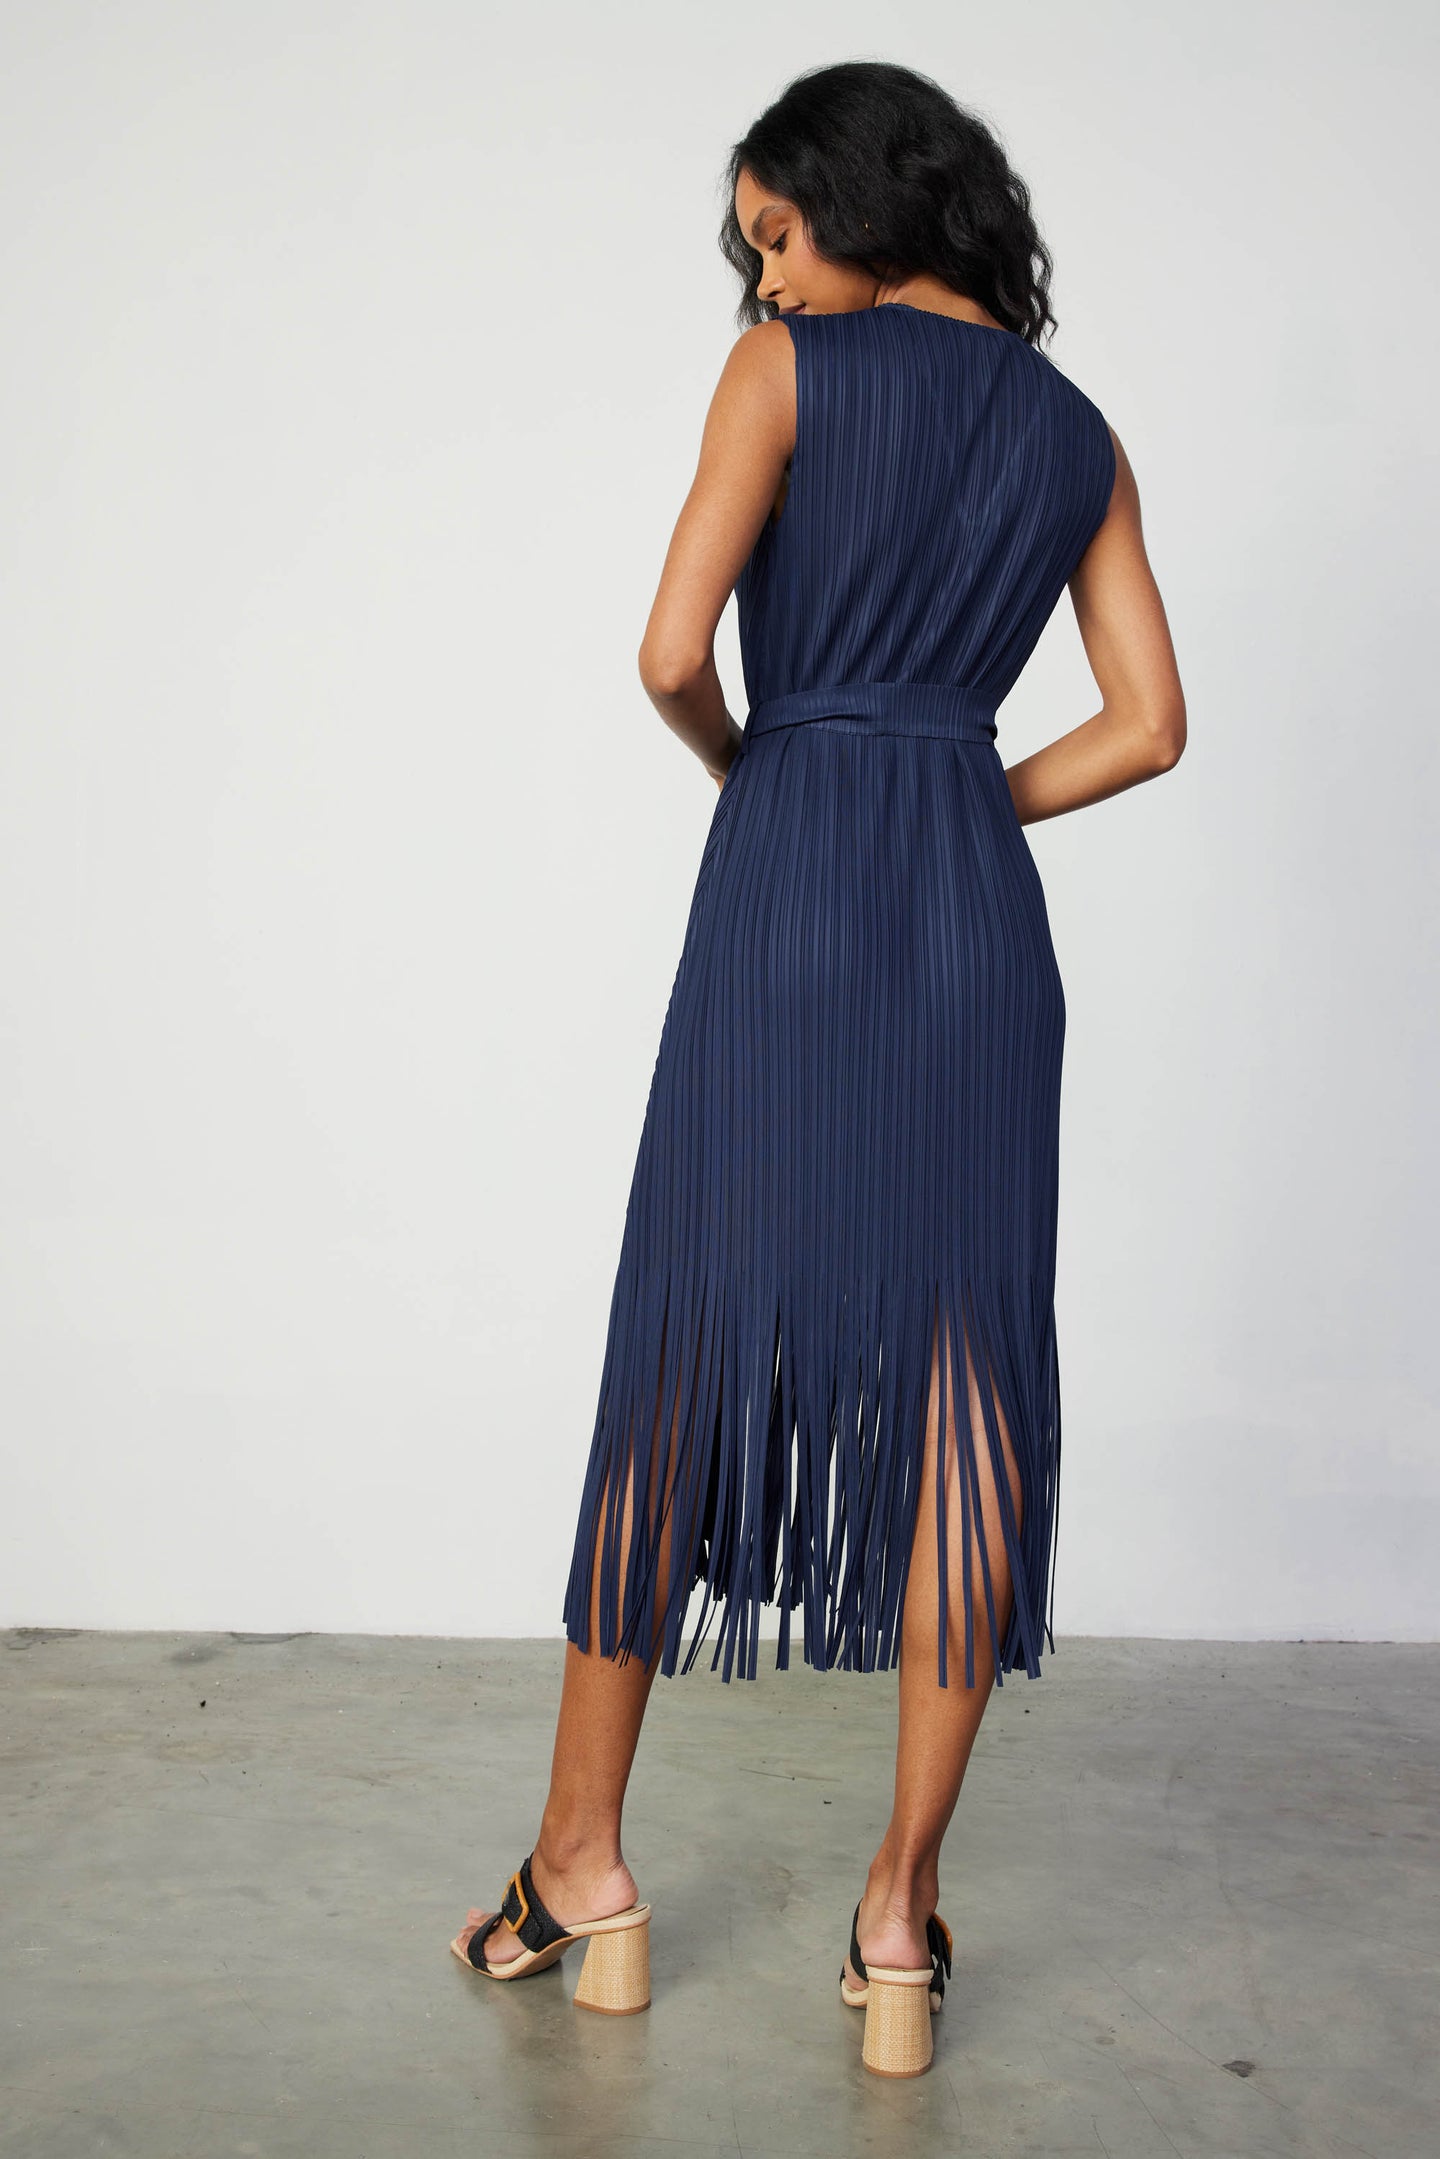 Fringe Skirt Midi Dress